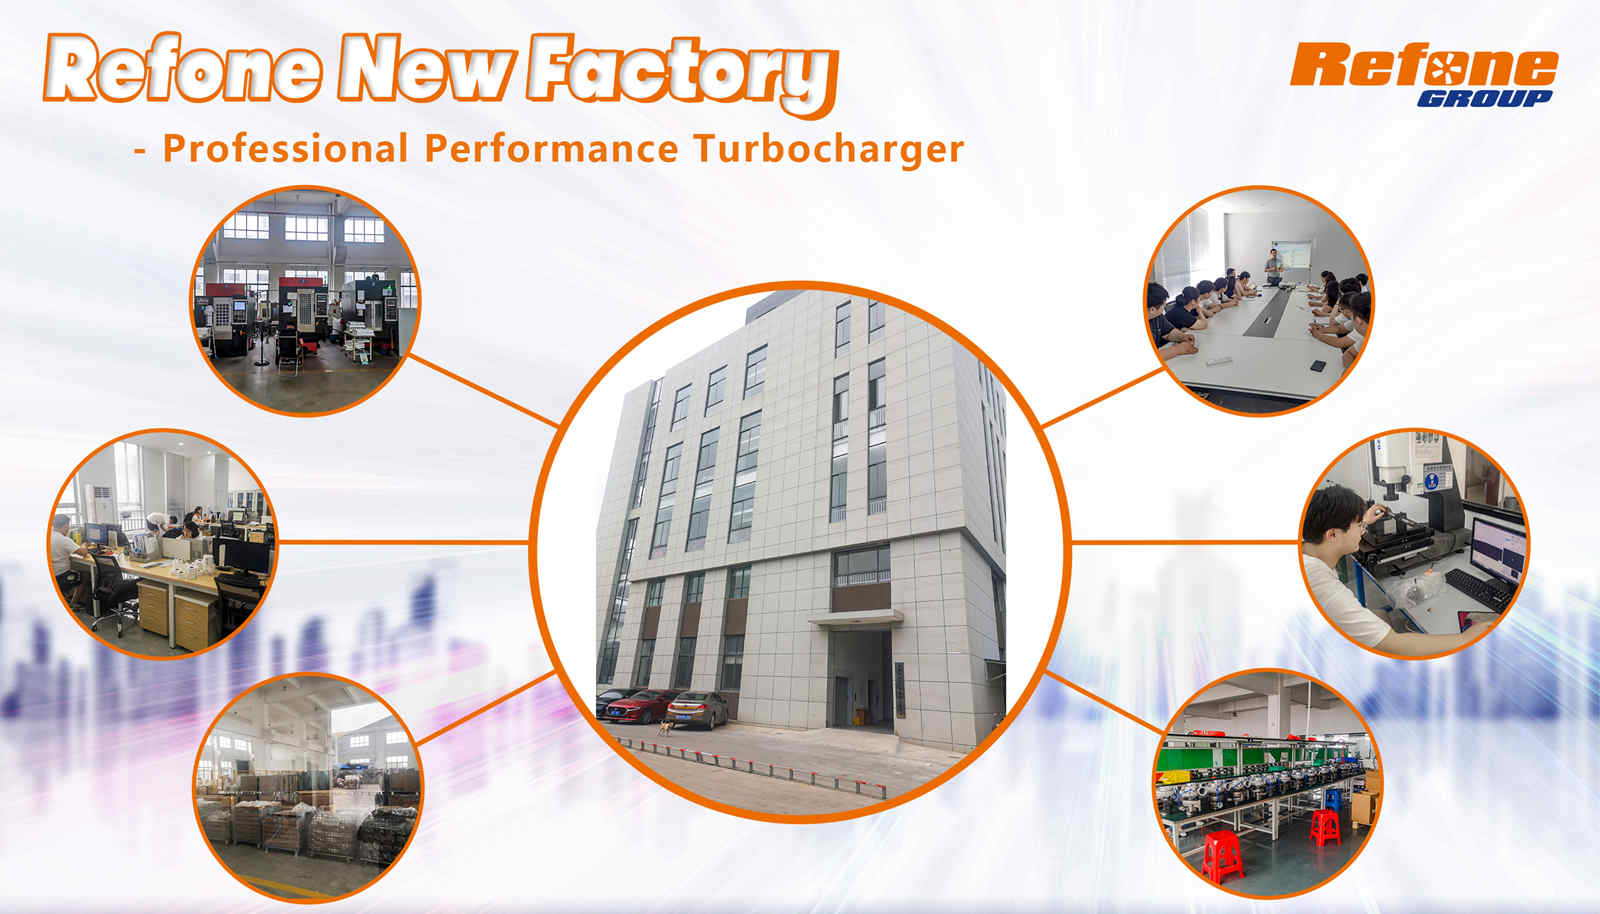 Refone nouvelle usine - turbocompresseur de performance professionnelle
